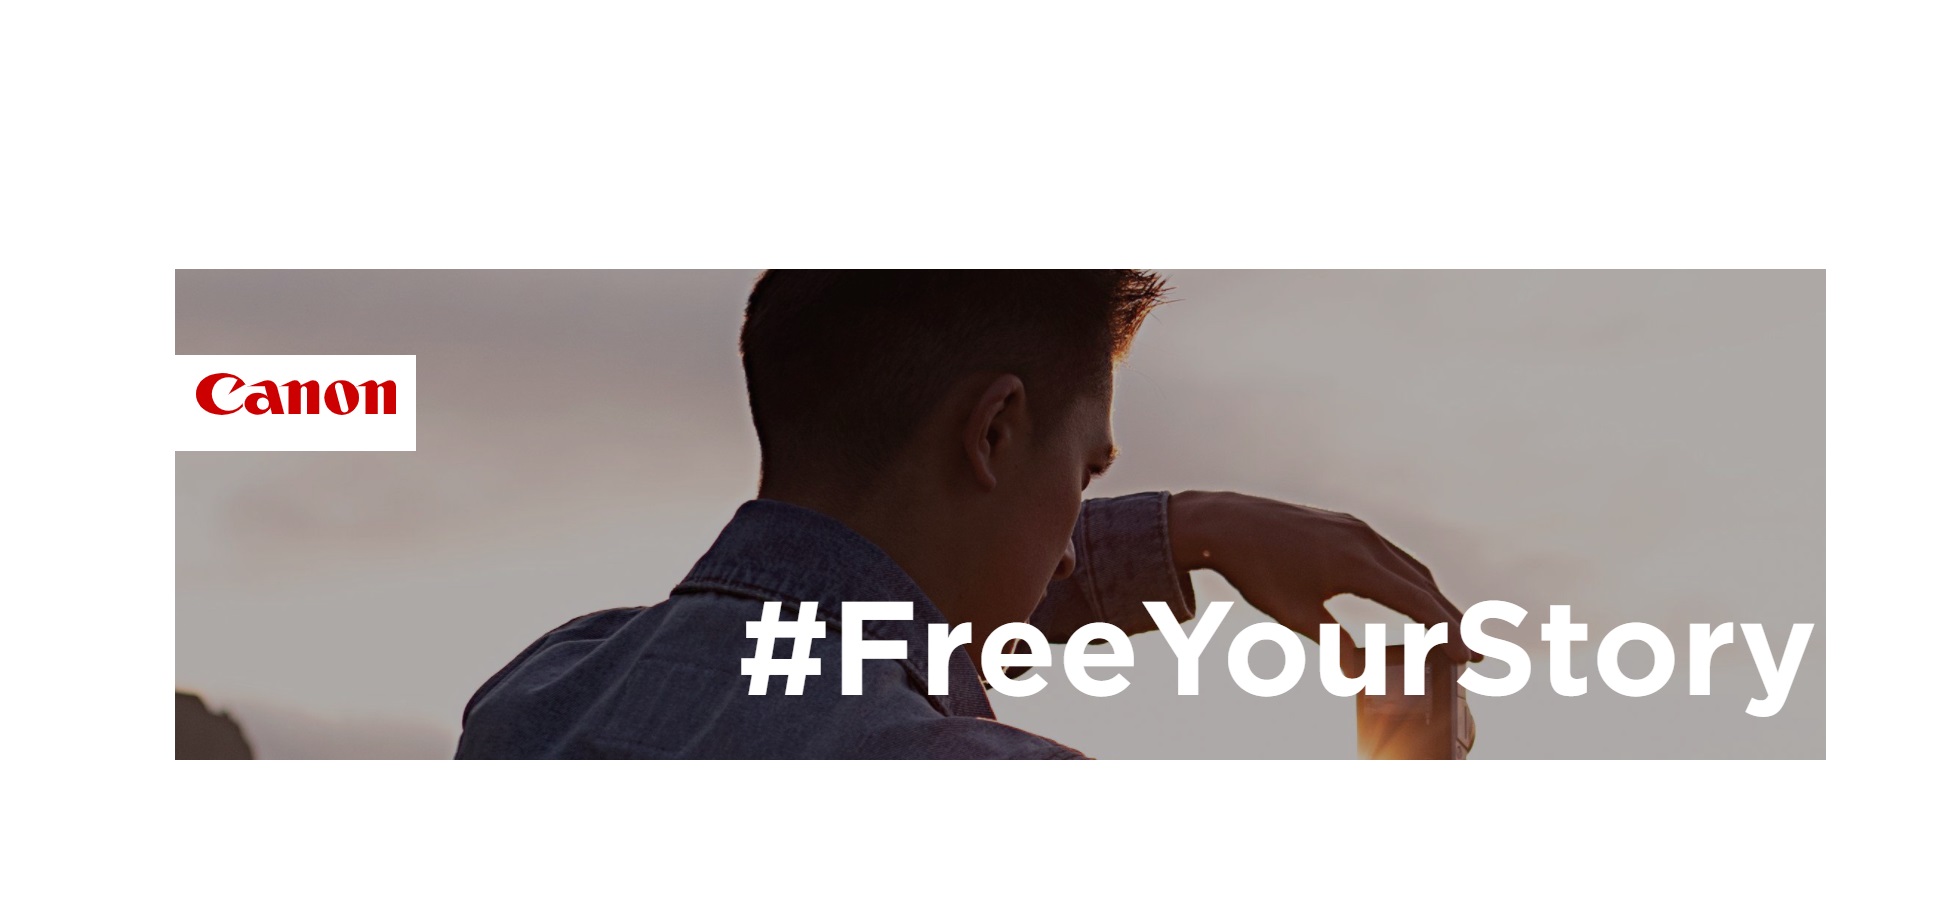 canon,#freeyourstory,programapublicidad